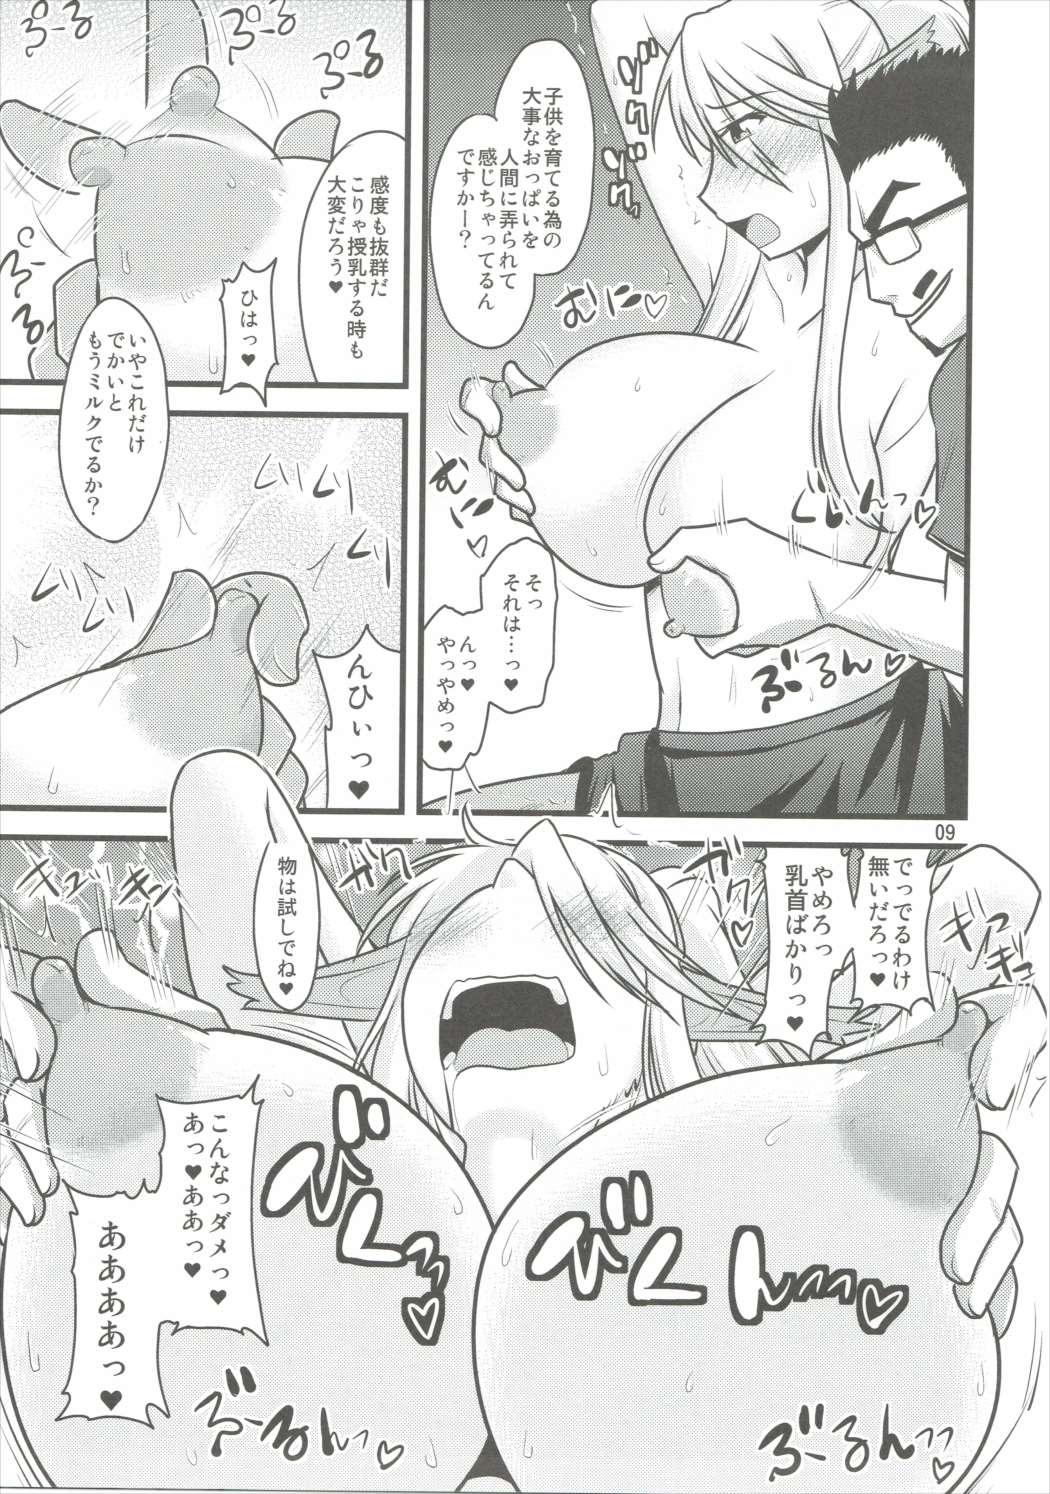 Blowjob Umanko NTR Satsueikai - Monster musume no iru nichijou Wife - Page 8